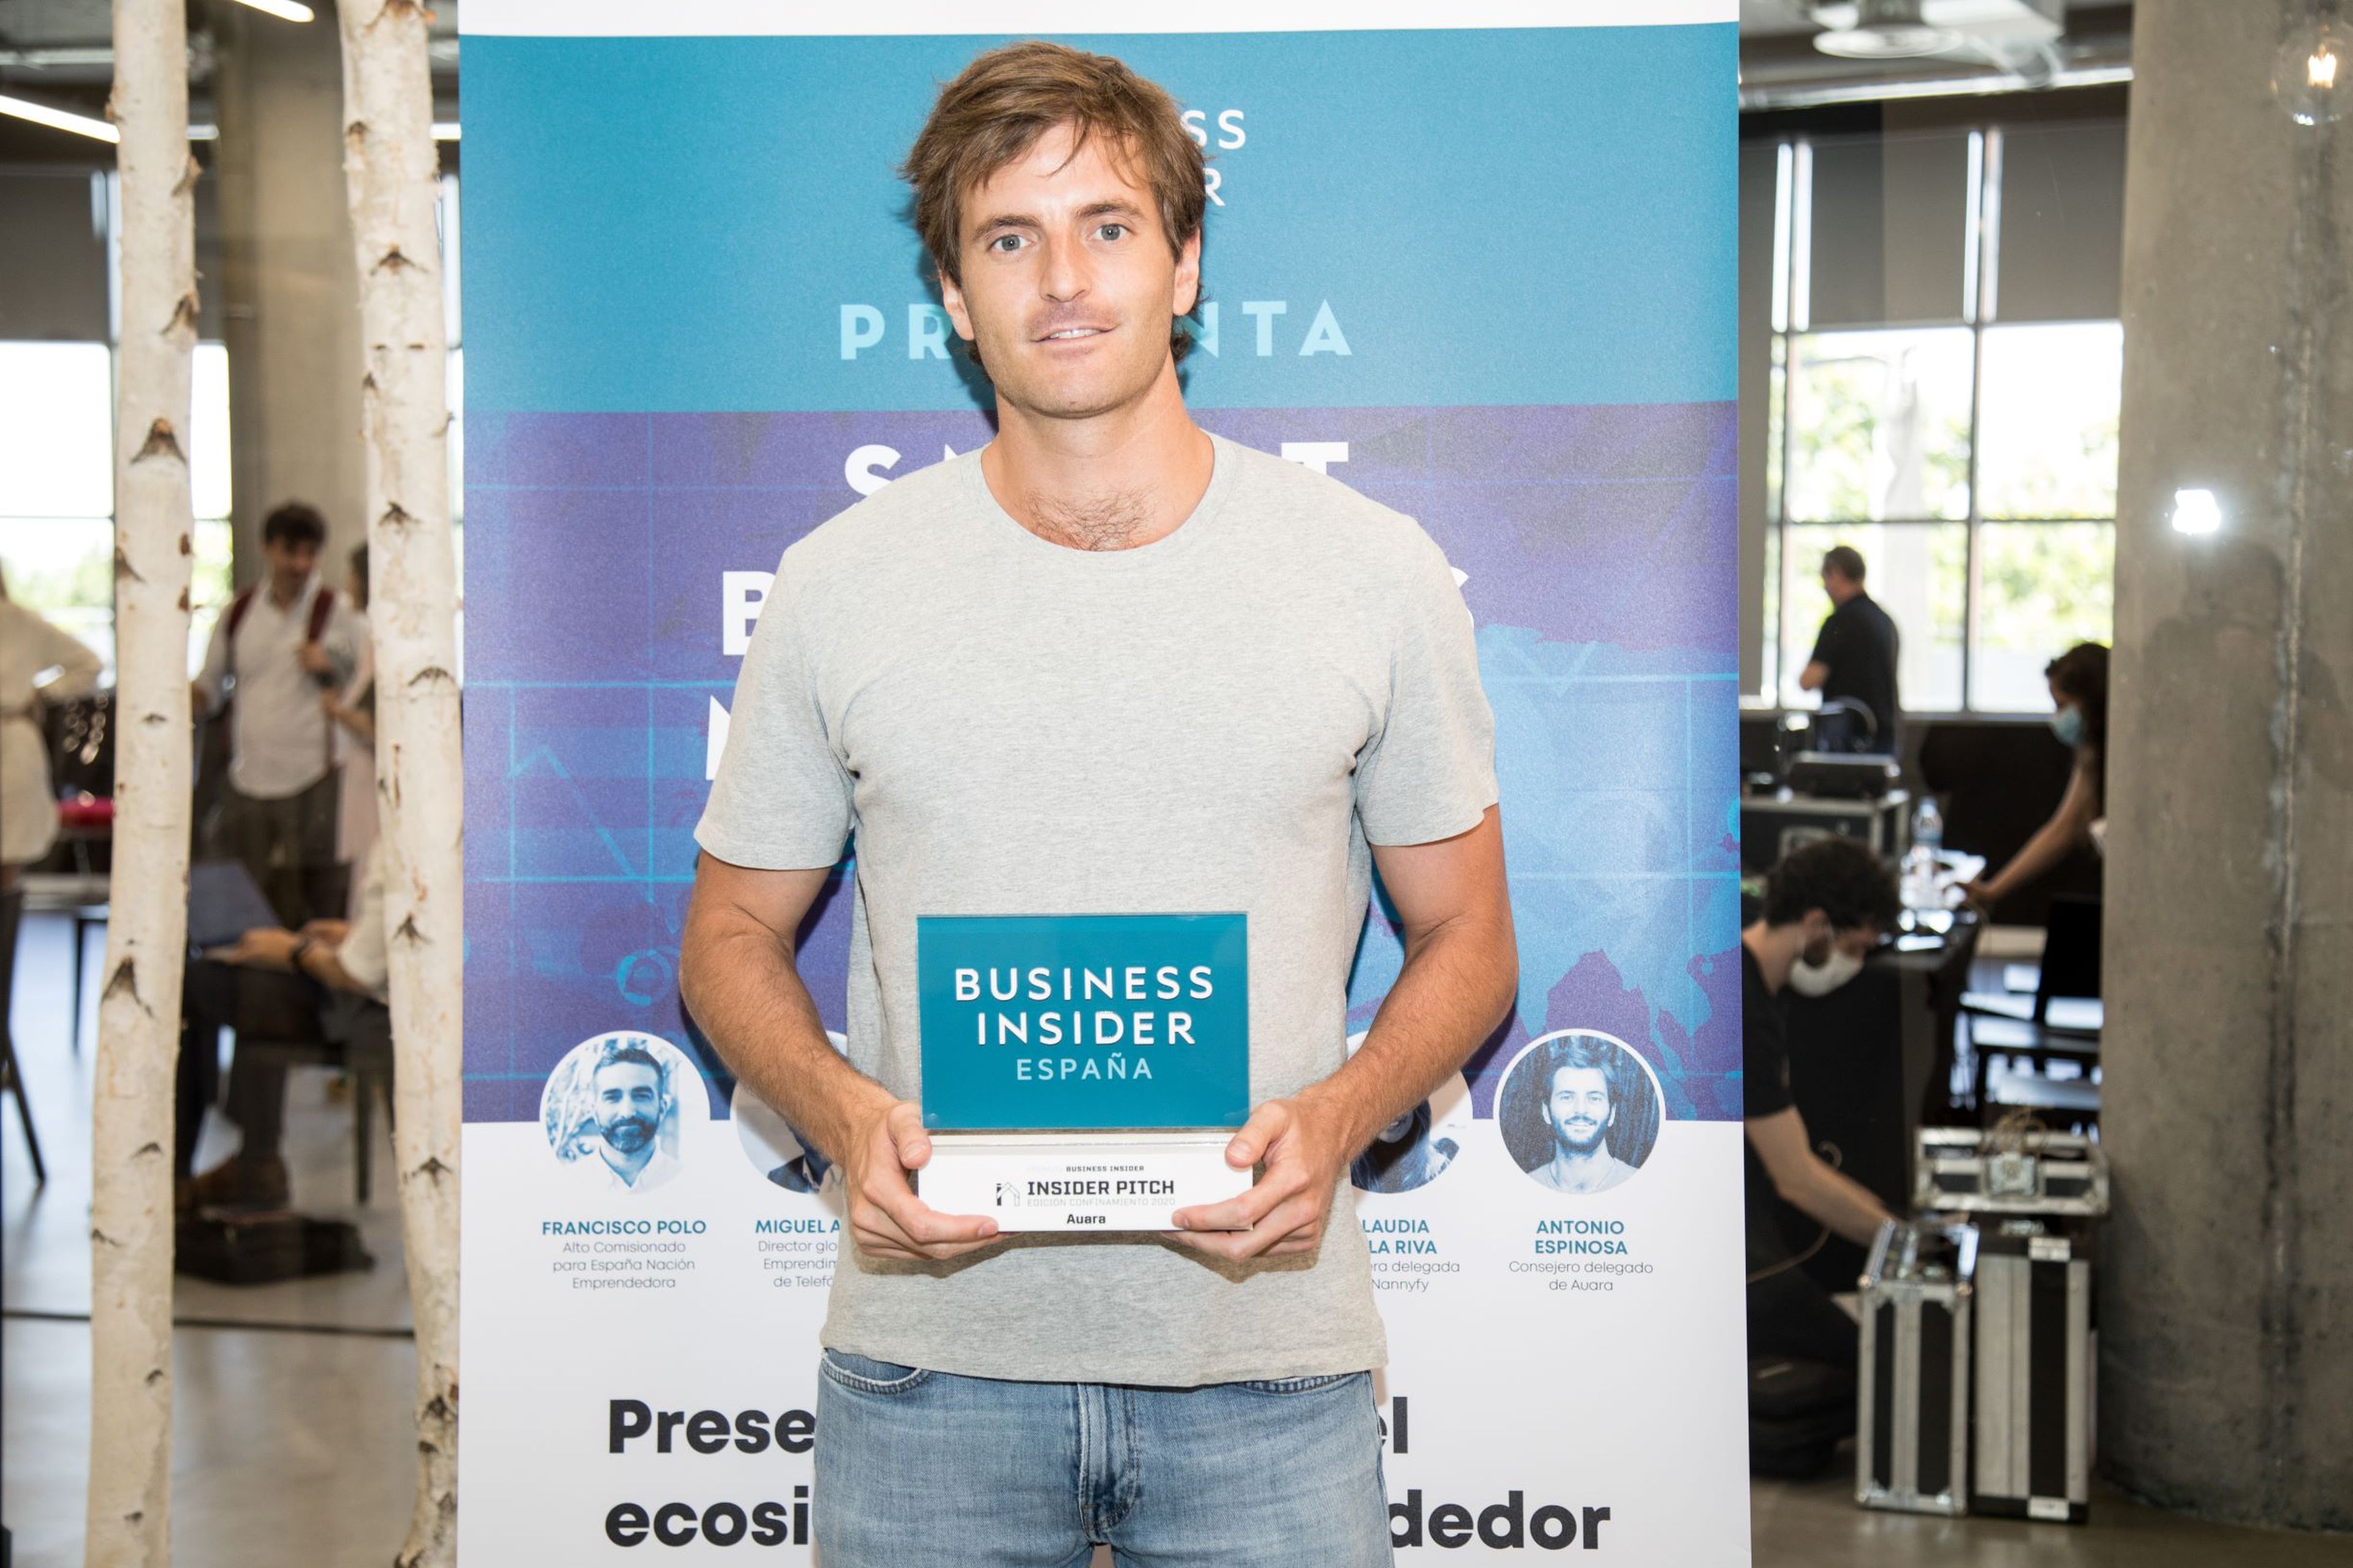 Antonio Espinosa, CEO de Auara, recibe el reconocimiento por haber sido una de las 2 startups ganadoras de Insider Pitch de Business Insider España.